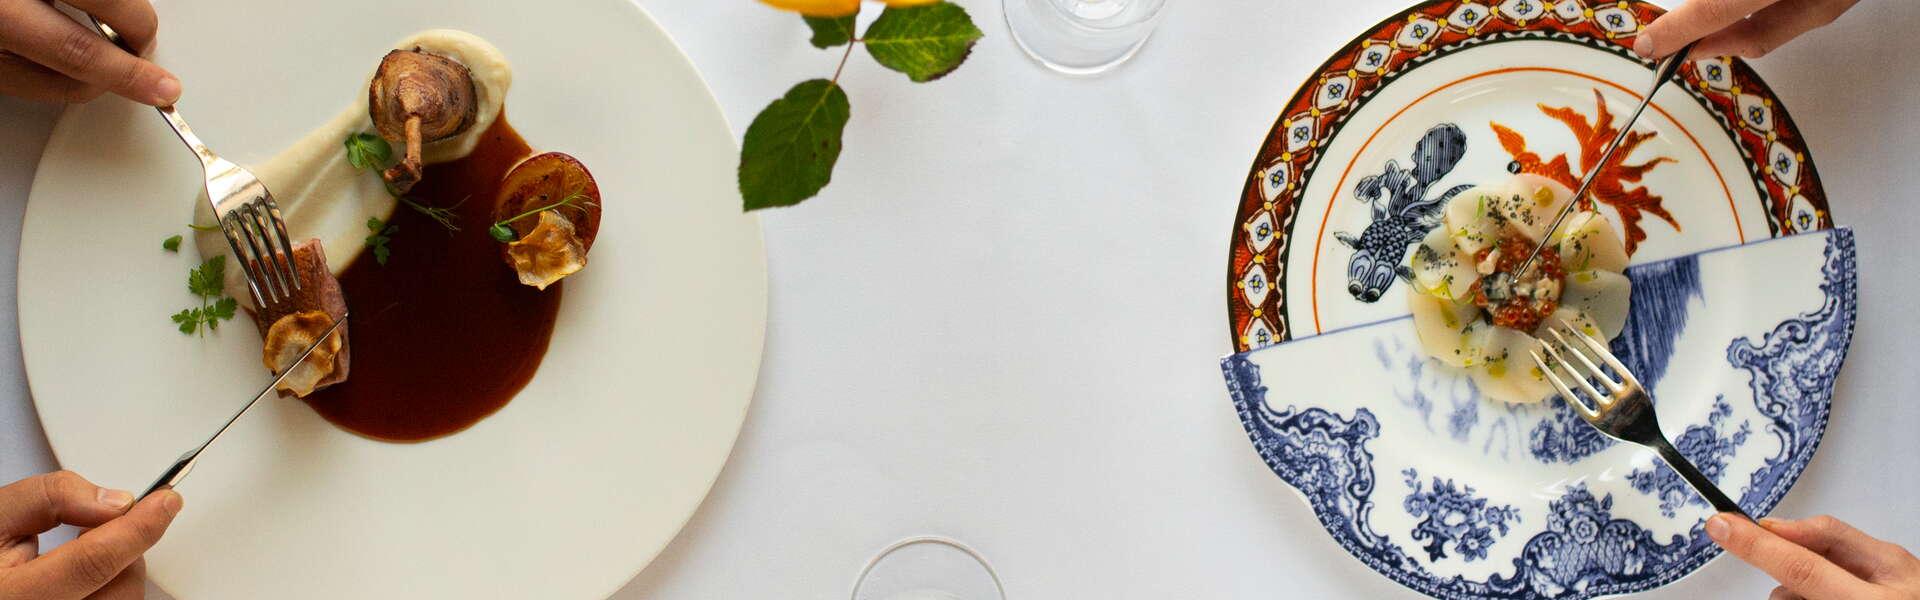 2 Teller mit Gerichten, elegant serviert, weiße Tischdecke und Weingläser